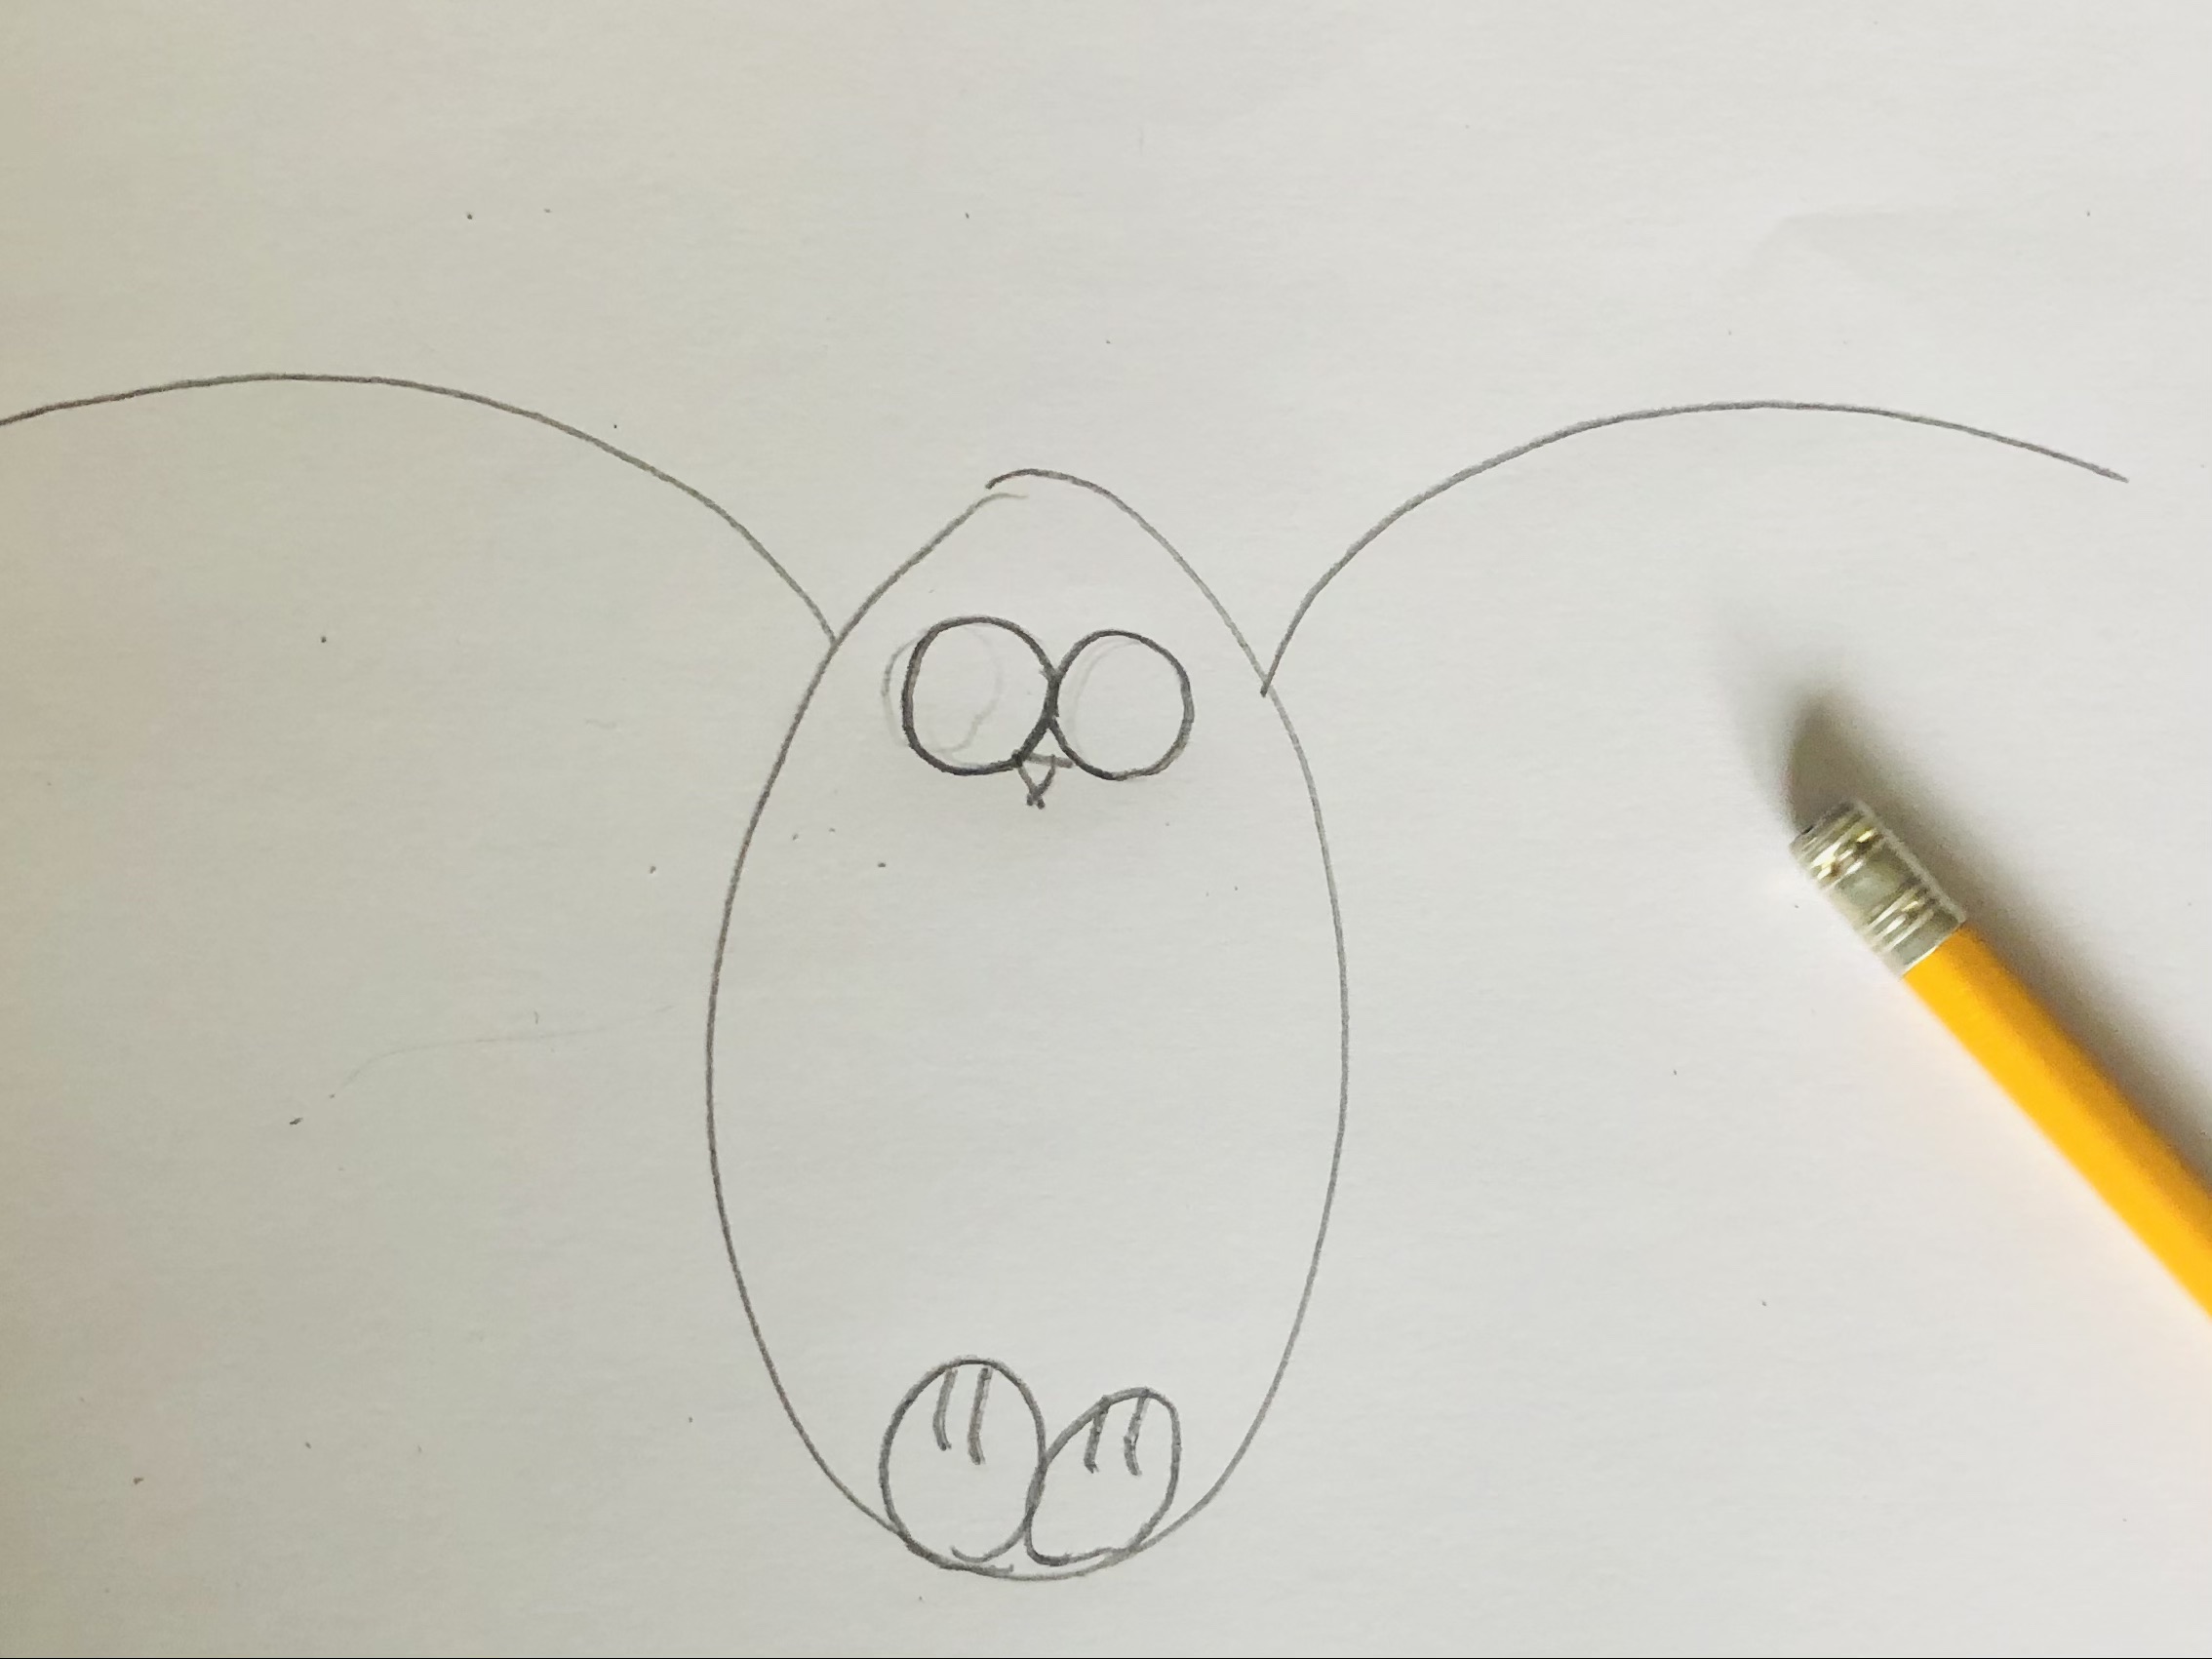 Bild zum Schritt 6 für das Bastel- und DIY-Abenteuer für Kinder: 'Nun malt ihr den Schnabel. Dafür malt ihr ein kleines...'